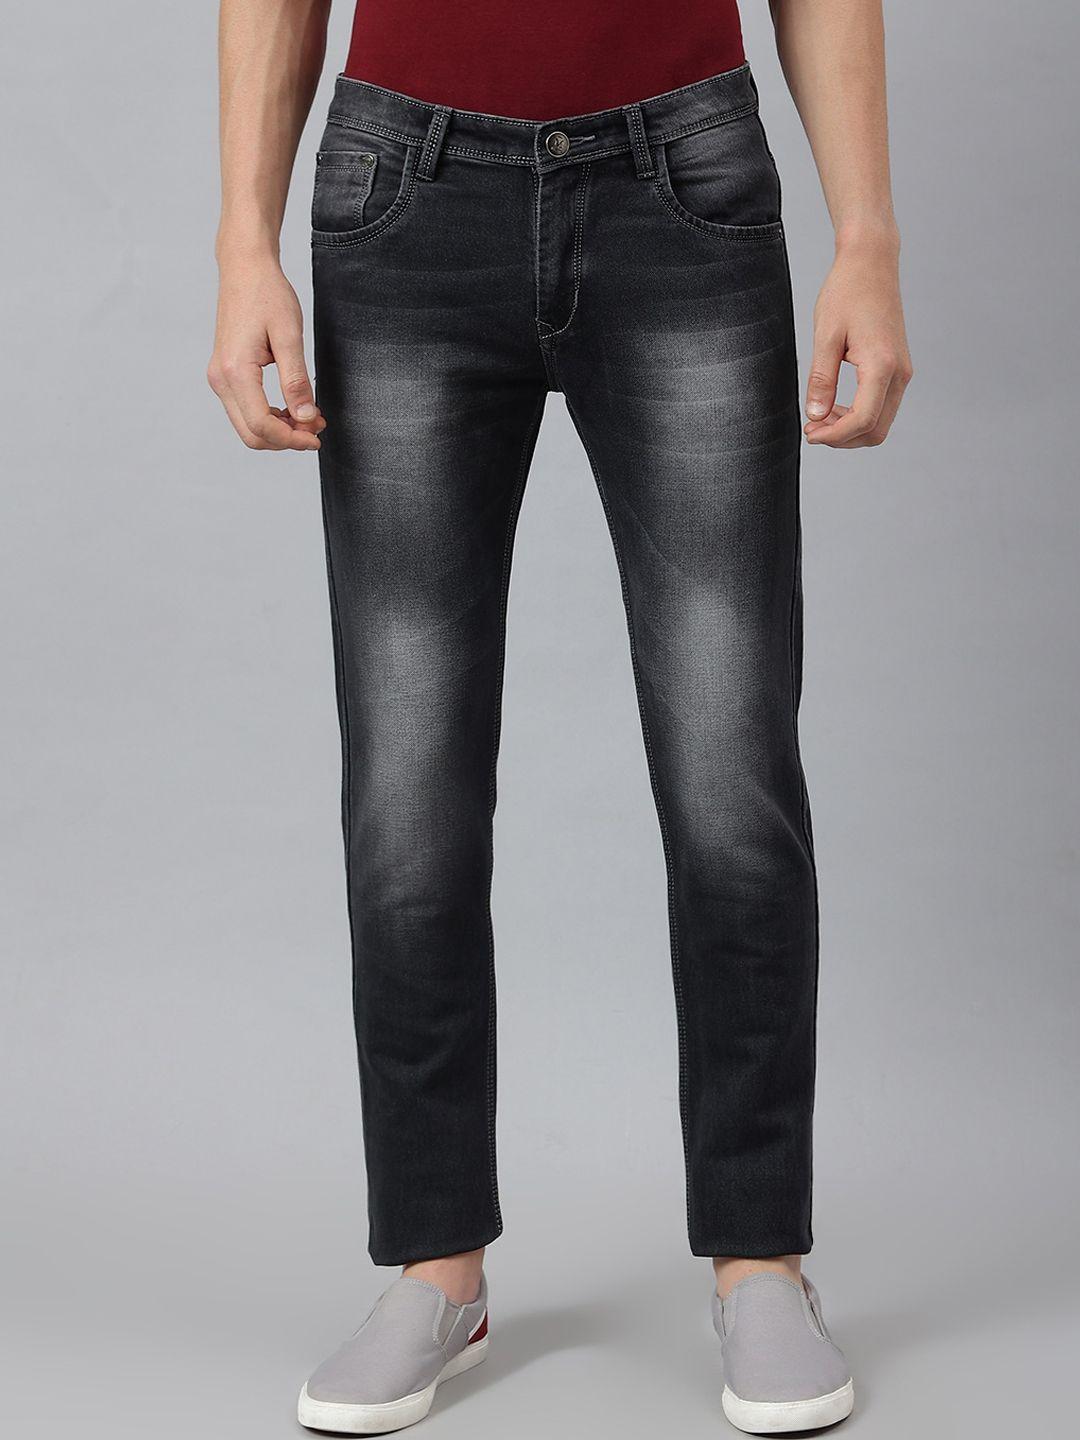 mr-button-men-black-slim-fit-heavy-fade-cotton-jeans